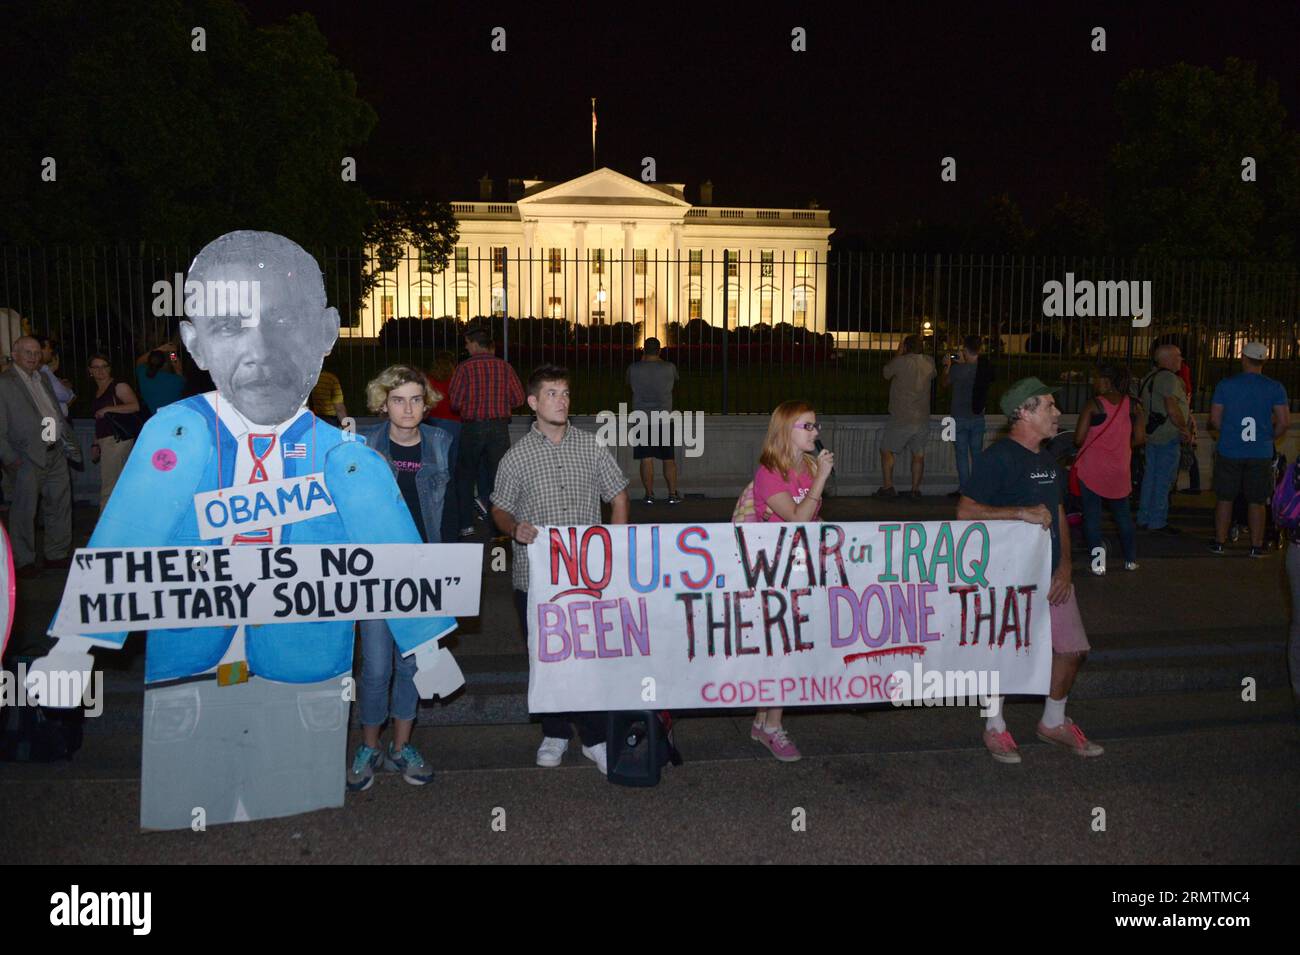 (140911) -- WASHINGTON, -- die Menschen nehmen an einer Demonstration Teil, die gegen militärische Aktionen im Irak und in Syrien protestiert, vor dem Weißen Haus in Washington, 10. September 2014. ) US-WASHINGTON-PROTEST YinxBogu PUBLICATIONxNOTxINxCHN Washington Prominente nehmen an einer Demonstration gegen militärische Aktionen im Irak und Syrien vor dem Weißen Haus in Washington Teil. September 10 2014 US-Washington Protest YinxBogu PUBLICATIONxNOTxINxCHN Stockfoto